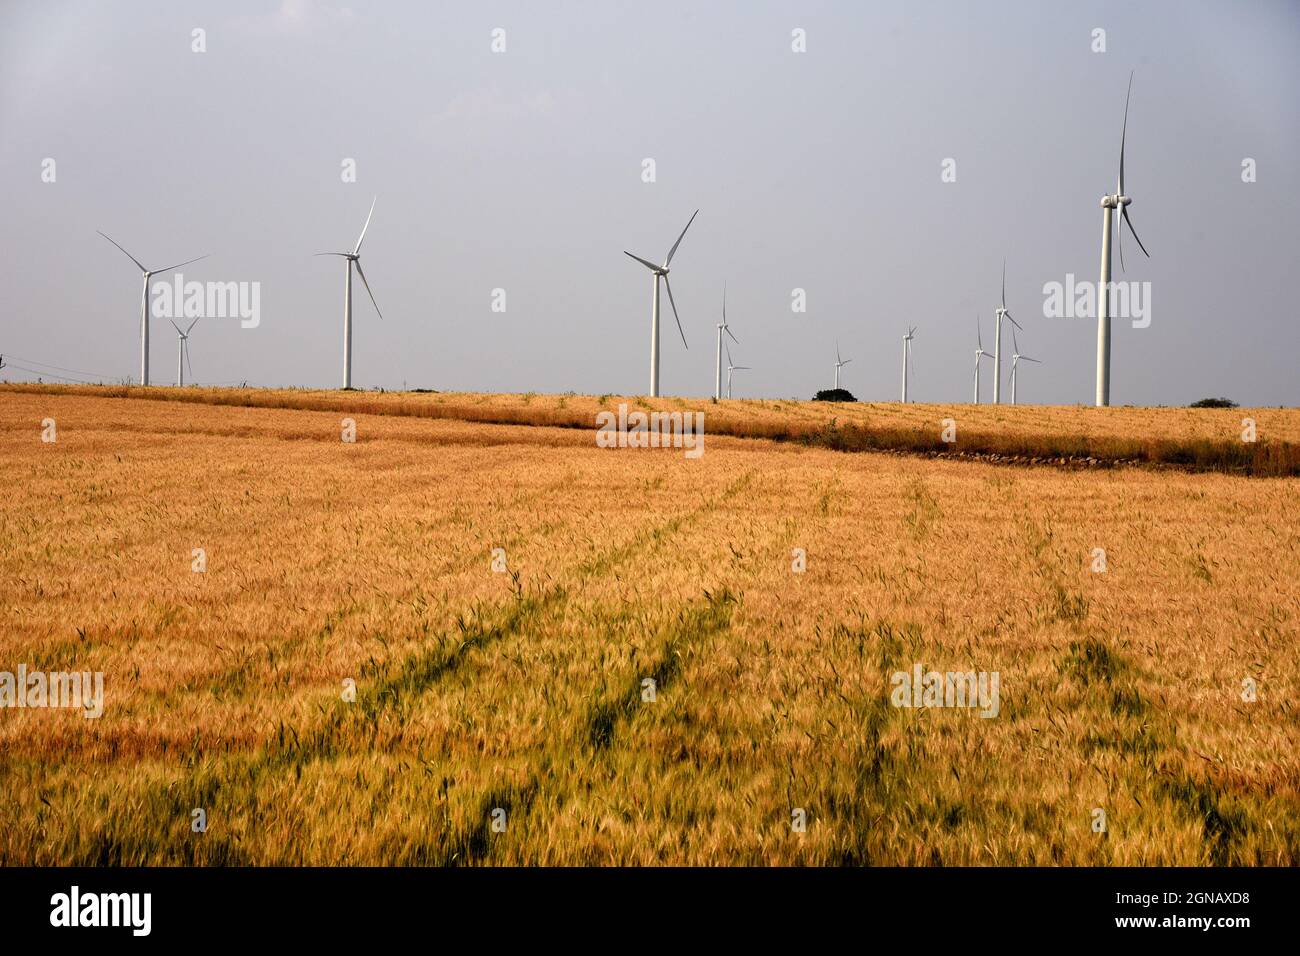 Die Windenergie wird in der Nähe von Indore, Madhya Pradesh, gefördert, um die Umwelt zu schützen und Strom aus alternativen Energiequellen zu erzeugen. Phot Stockfoto